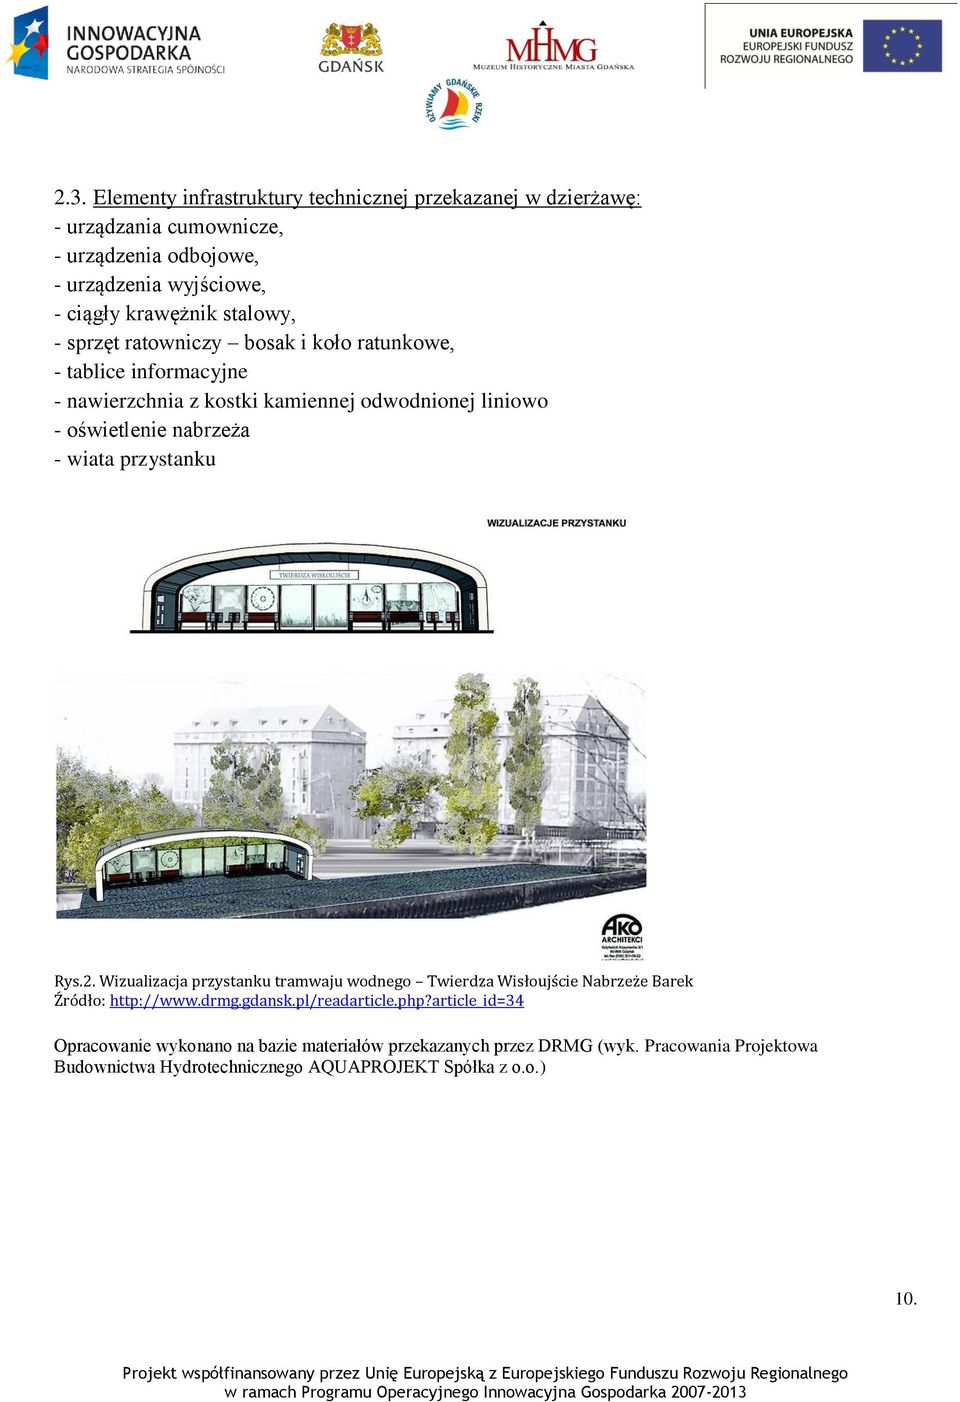 wiata przystanku Rys.2. Wizualizacja przystanku tramwaju wodnego Twierdza Wisłoujście Nabrzeże Barek Źródło: http://www.drmg.gdansk.pl/readarticle.php?